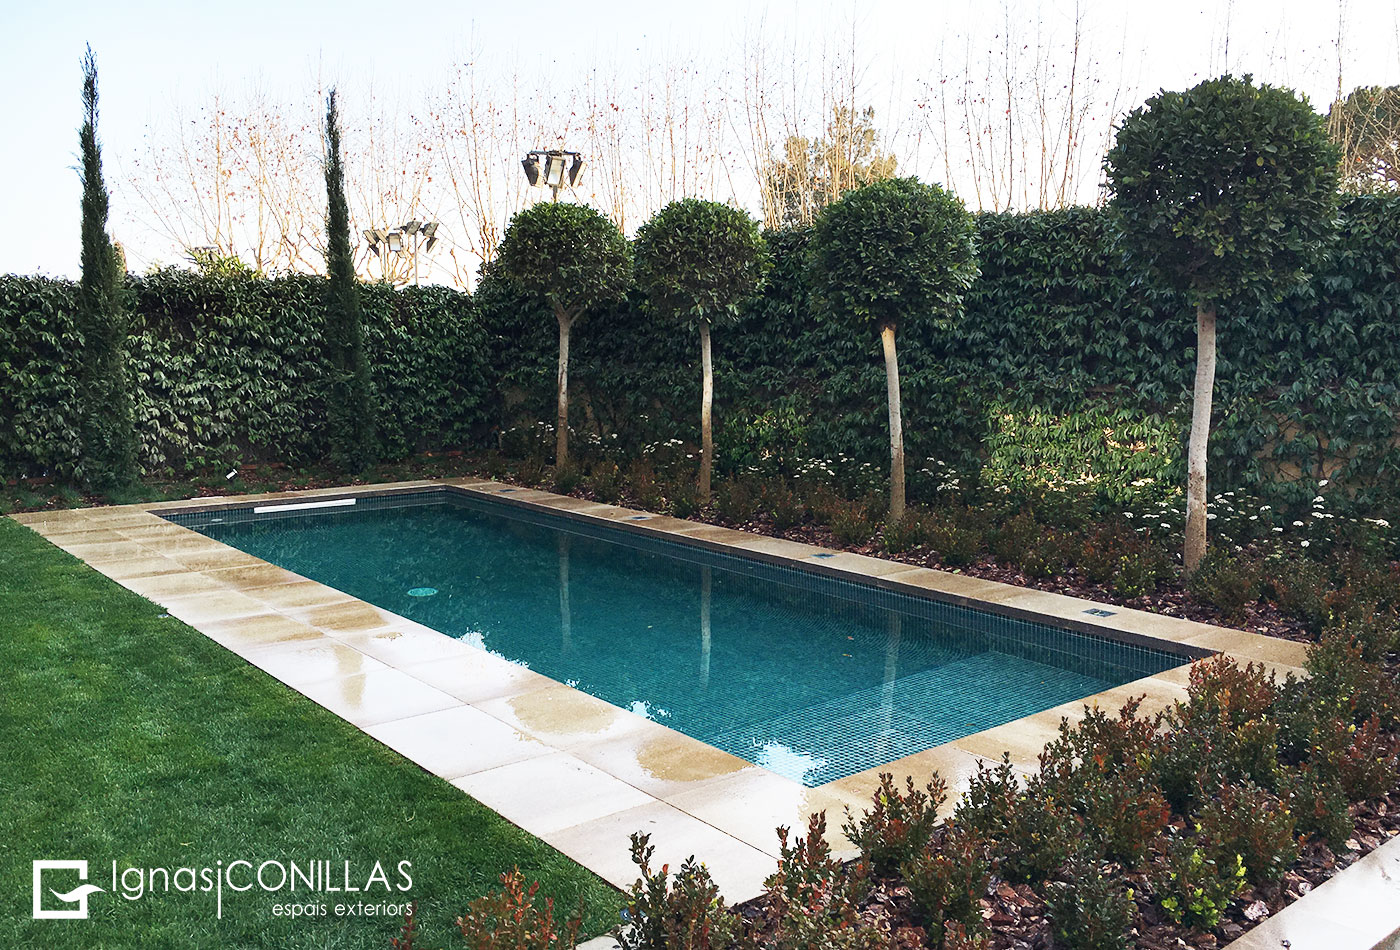 CONILLAS-Jardin-con-piscina900x450a